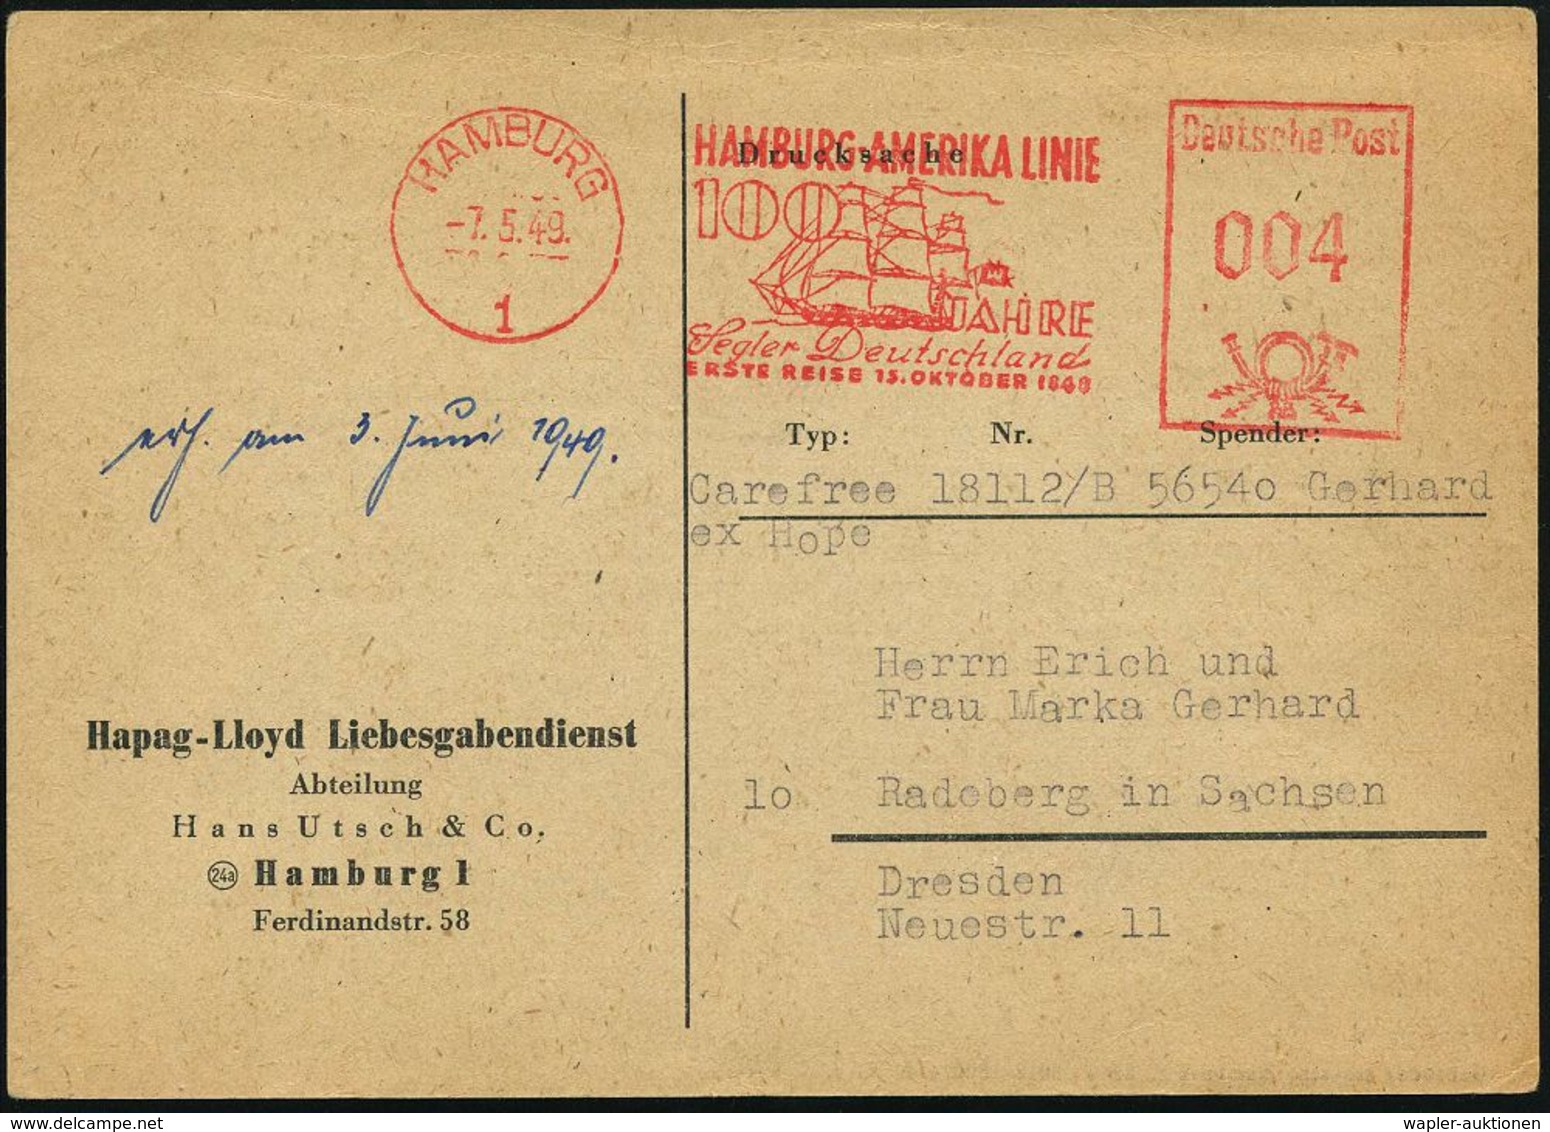 HAMBURG/ 1/ HAMBURG-AMERIKA LINIE/ 100 JAHRE/ Segler Deutschland/ ERSTE REISE 15.OKT.1848 1949 (7.5.) Sehr Seltener AFS  - Maritime